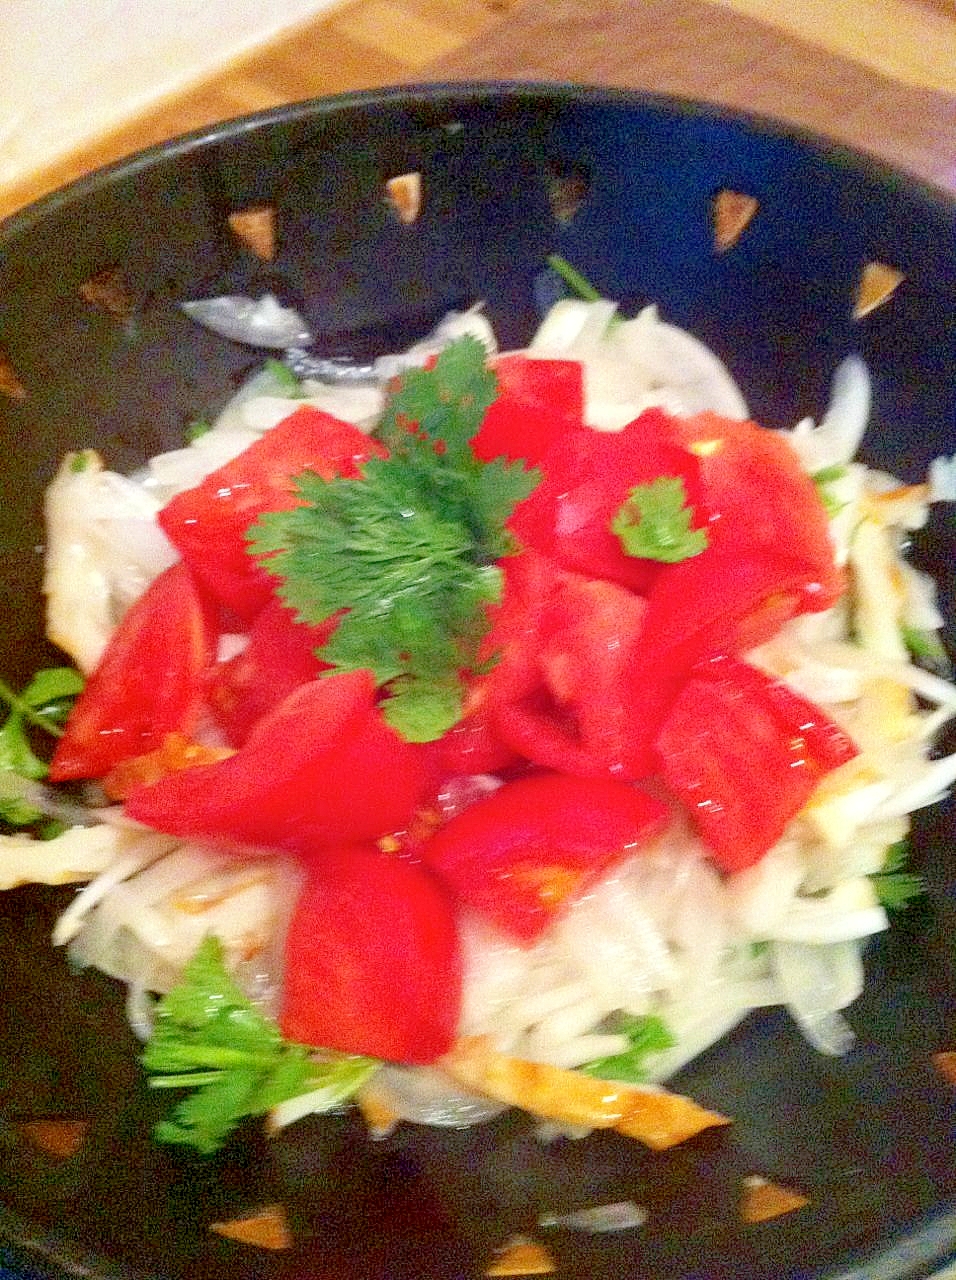 新玉葱とパクチーでタイ風サラダ